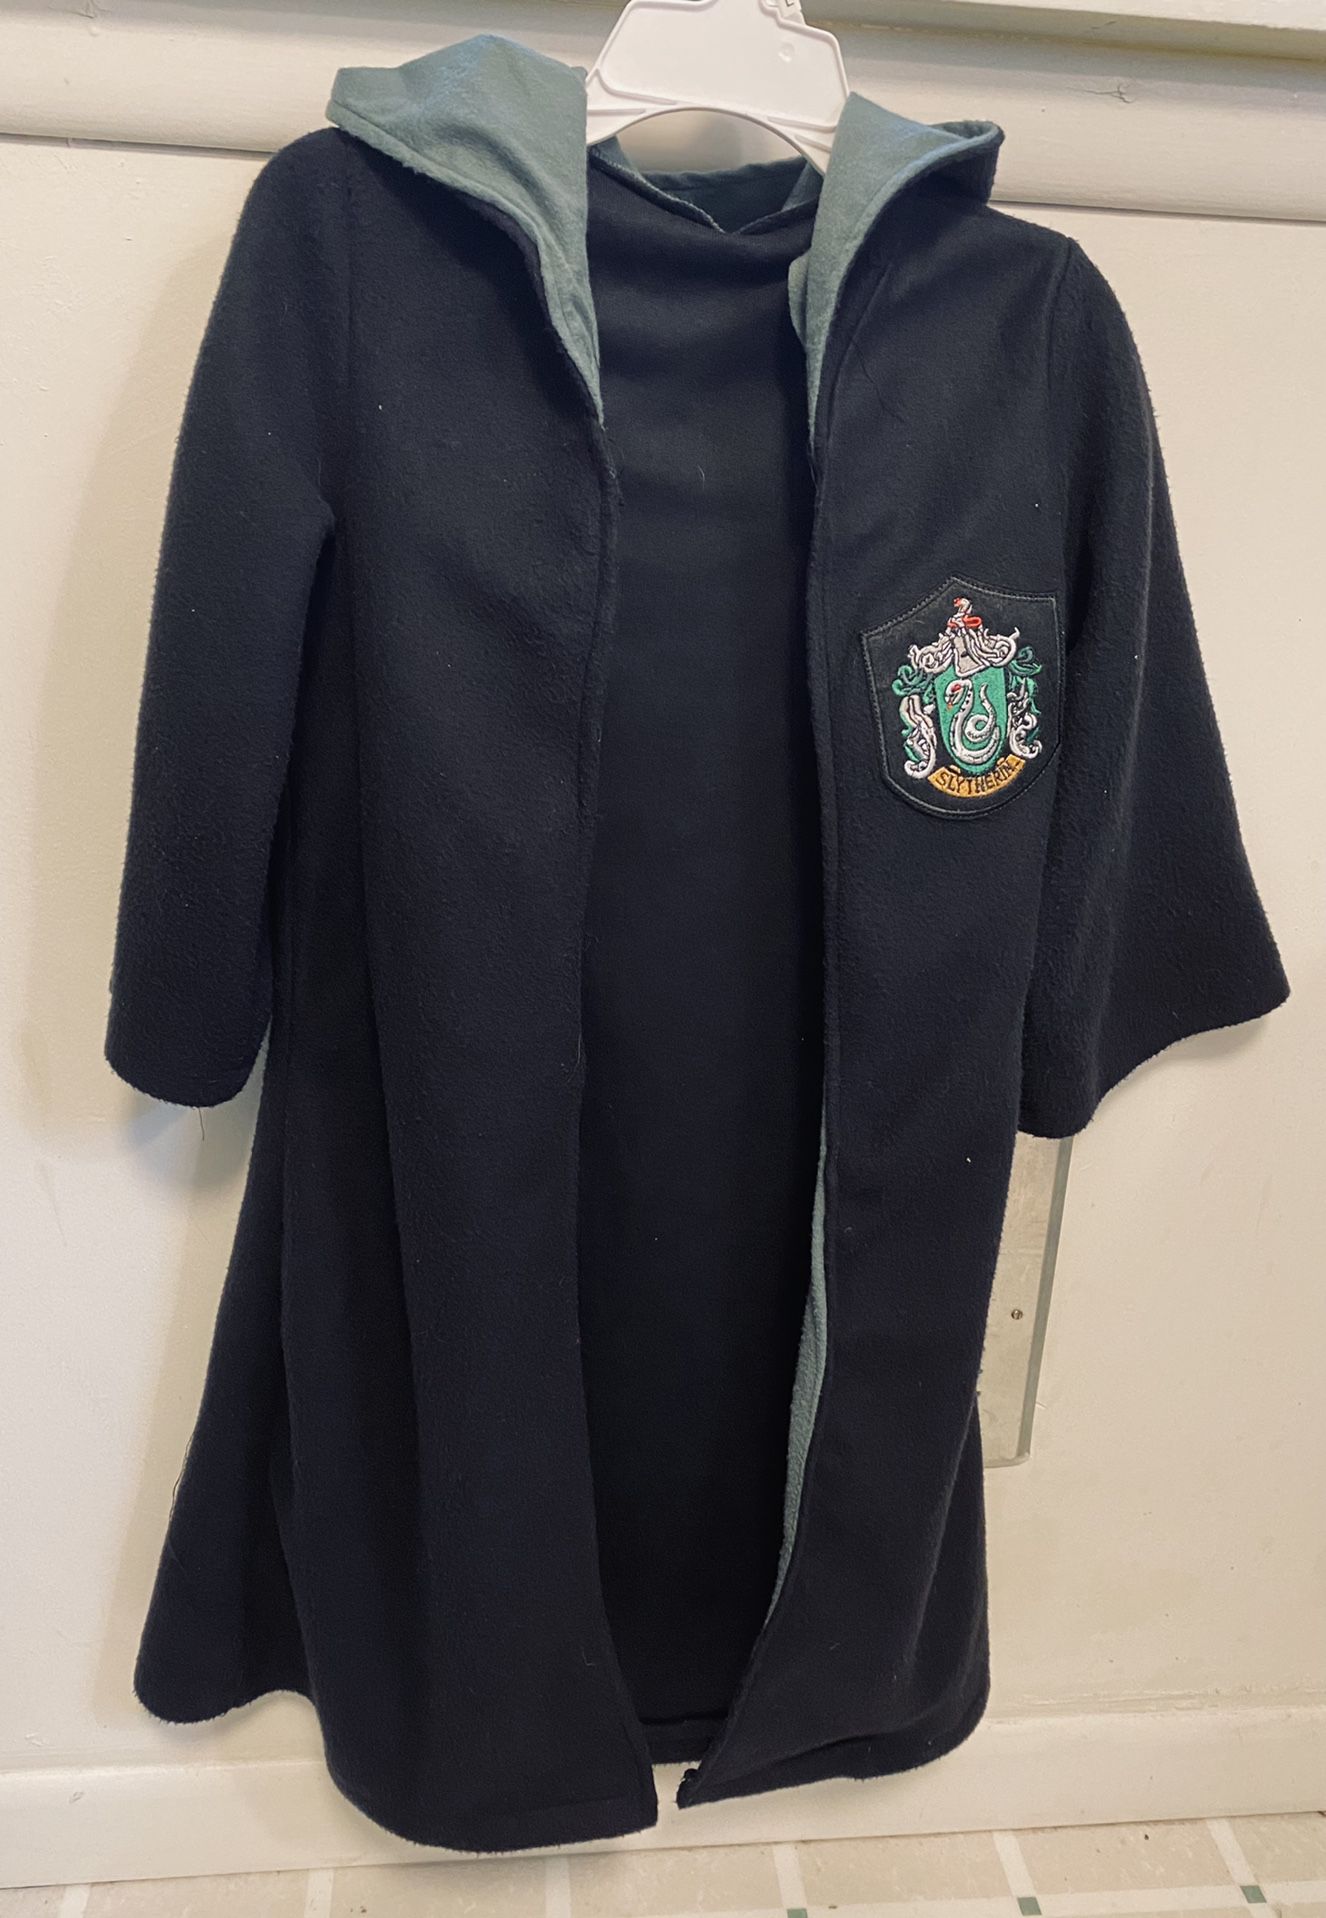 Harry Potter Robe House Of Slytherin, Kids size small Fleece